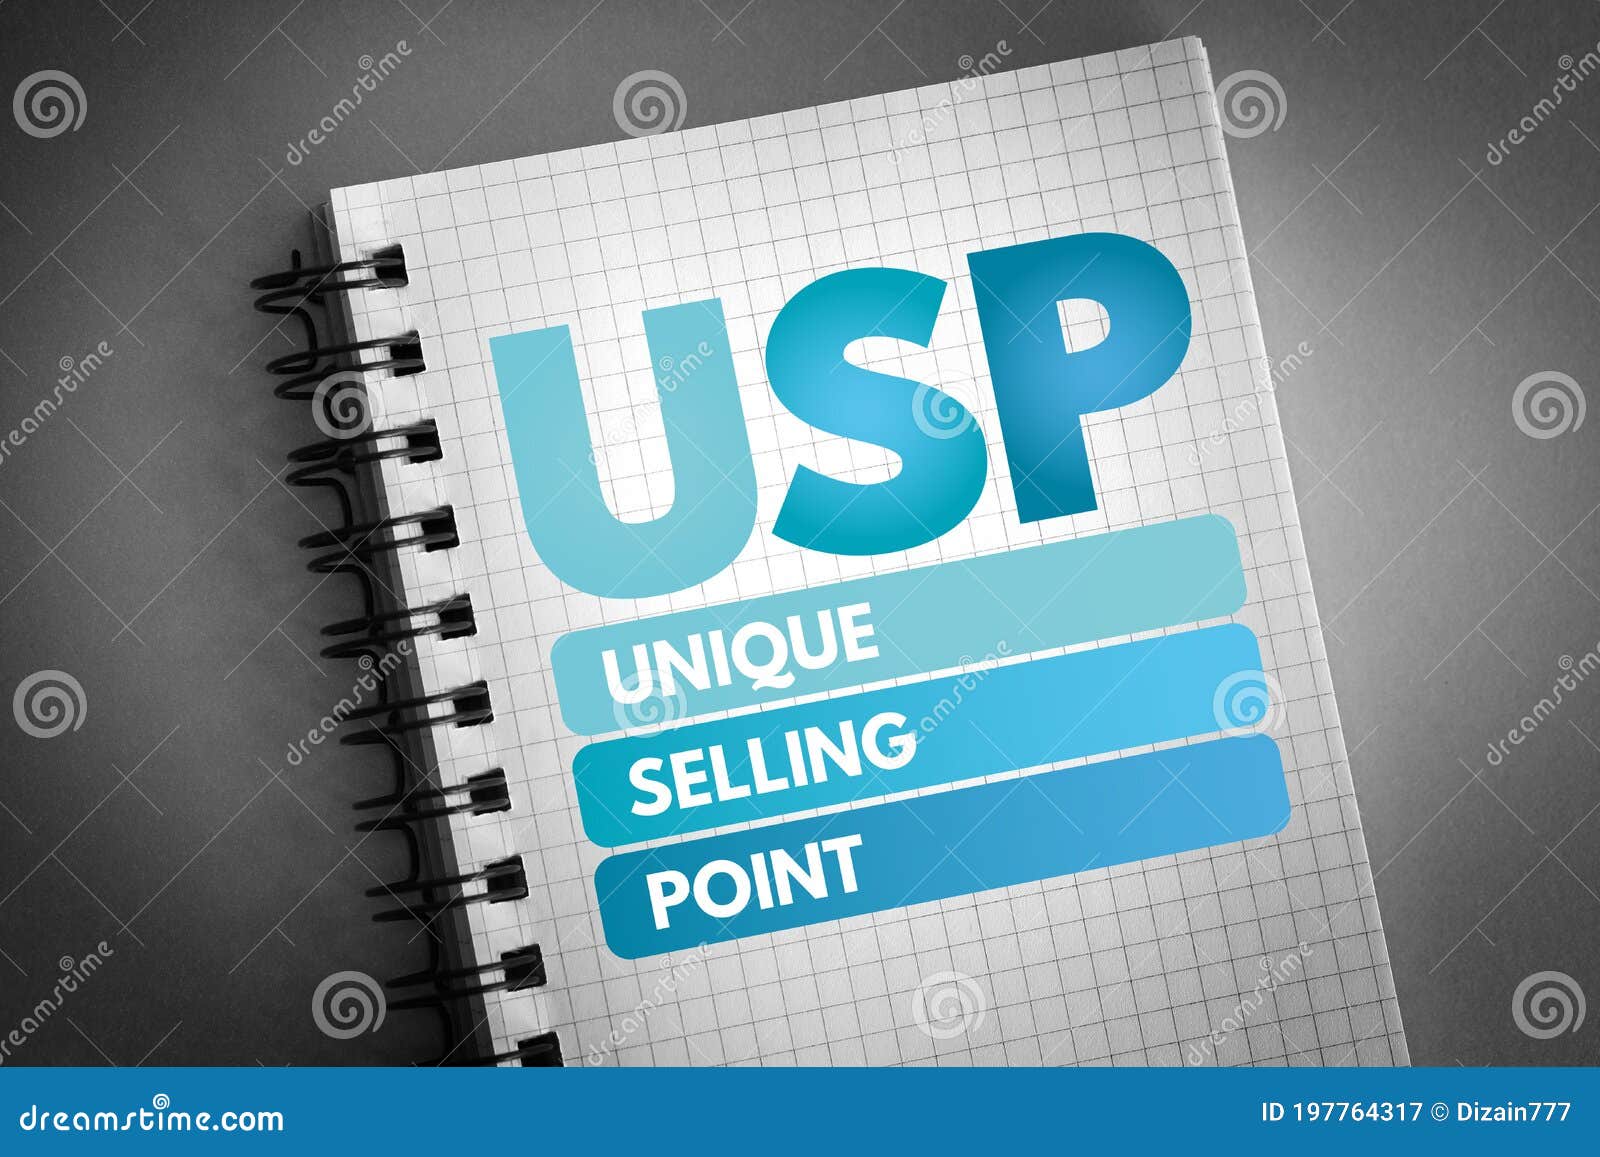 usp - unique selling point acronym